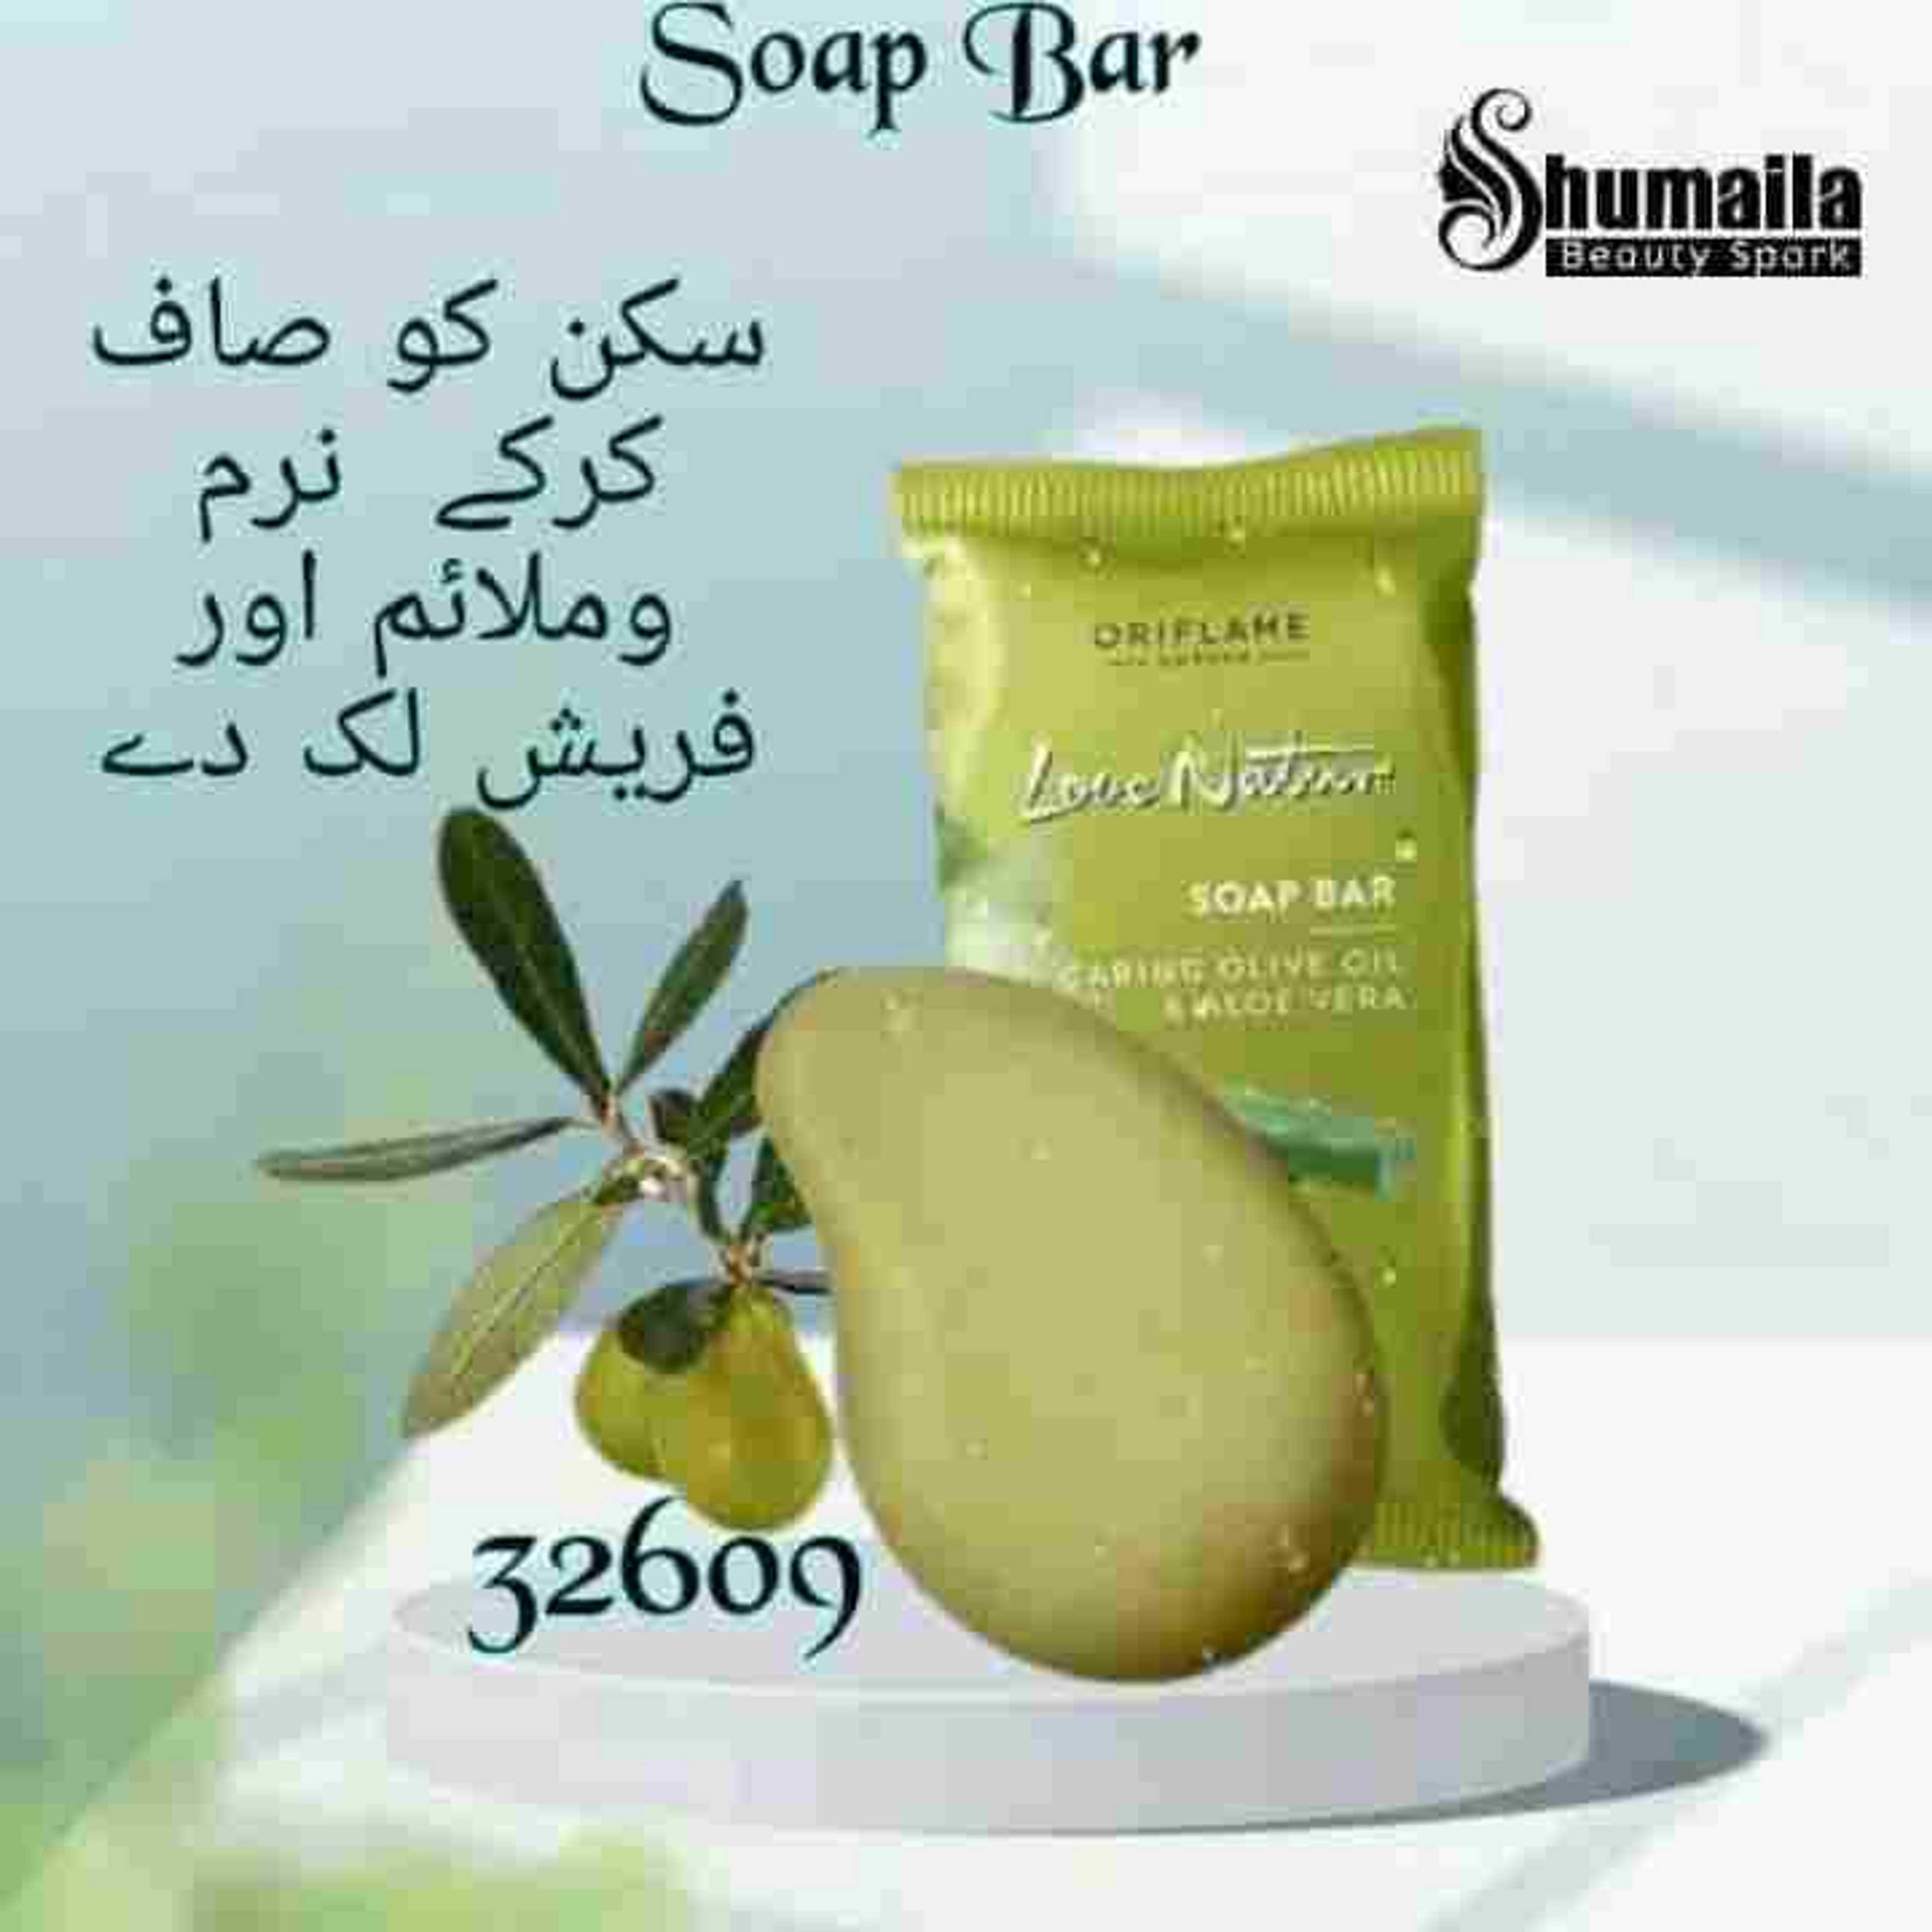 Aloe Vera soap by Oriflame